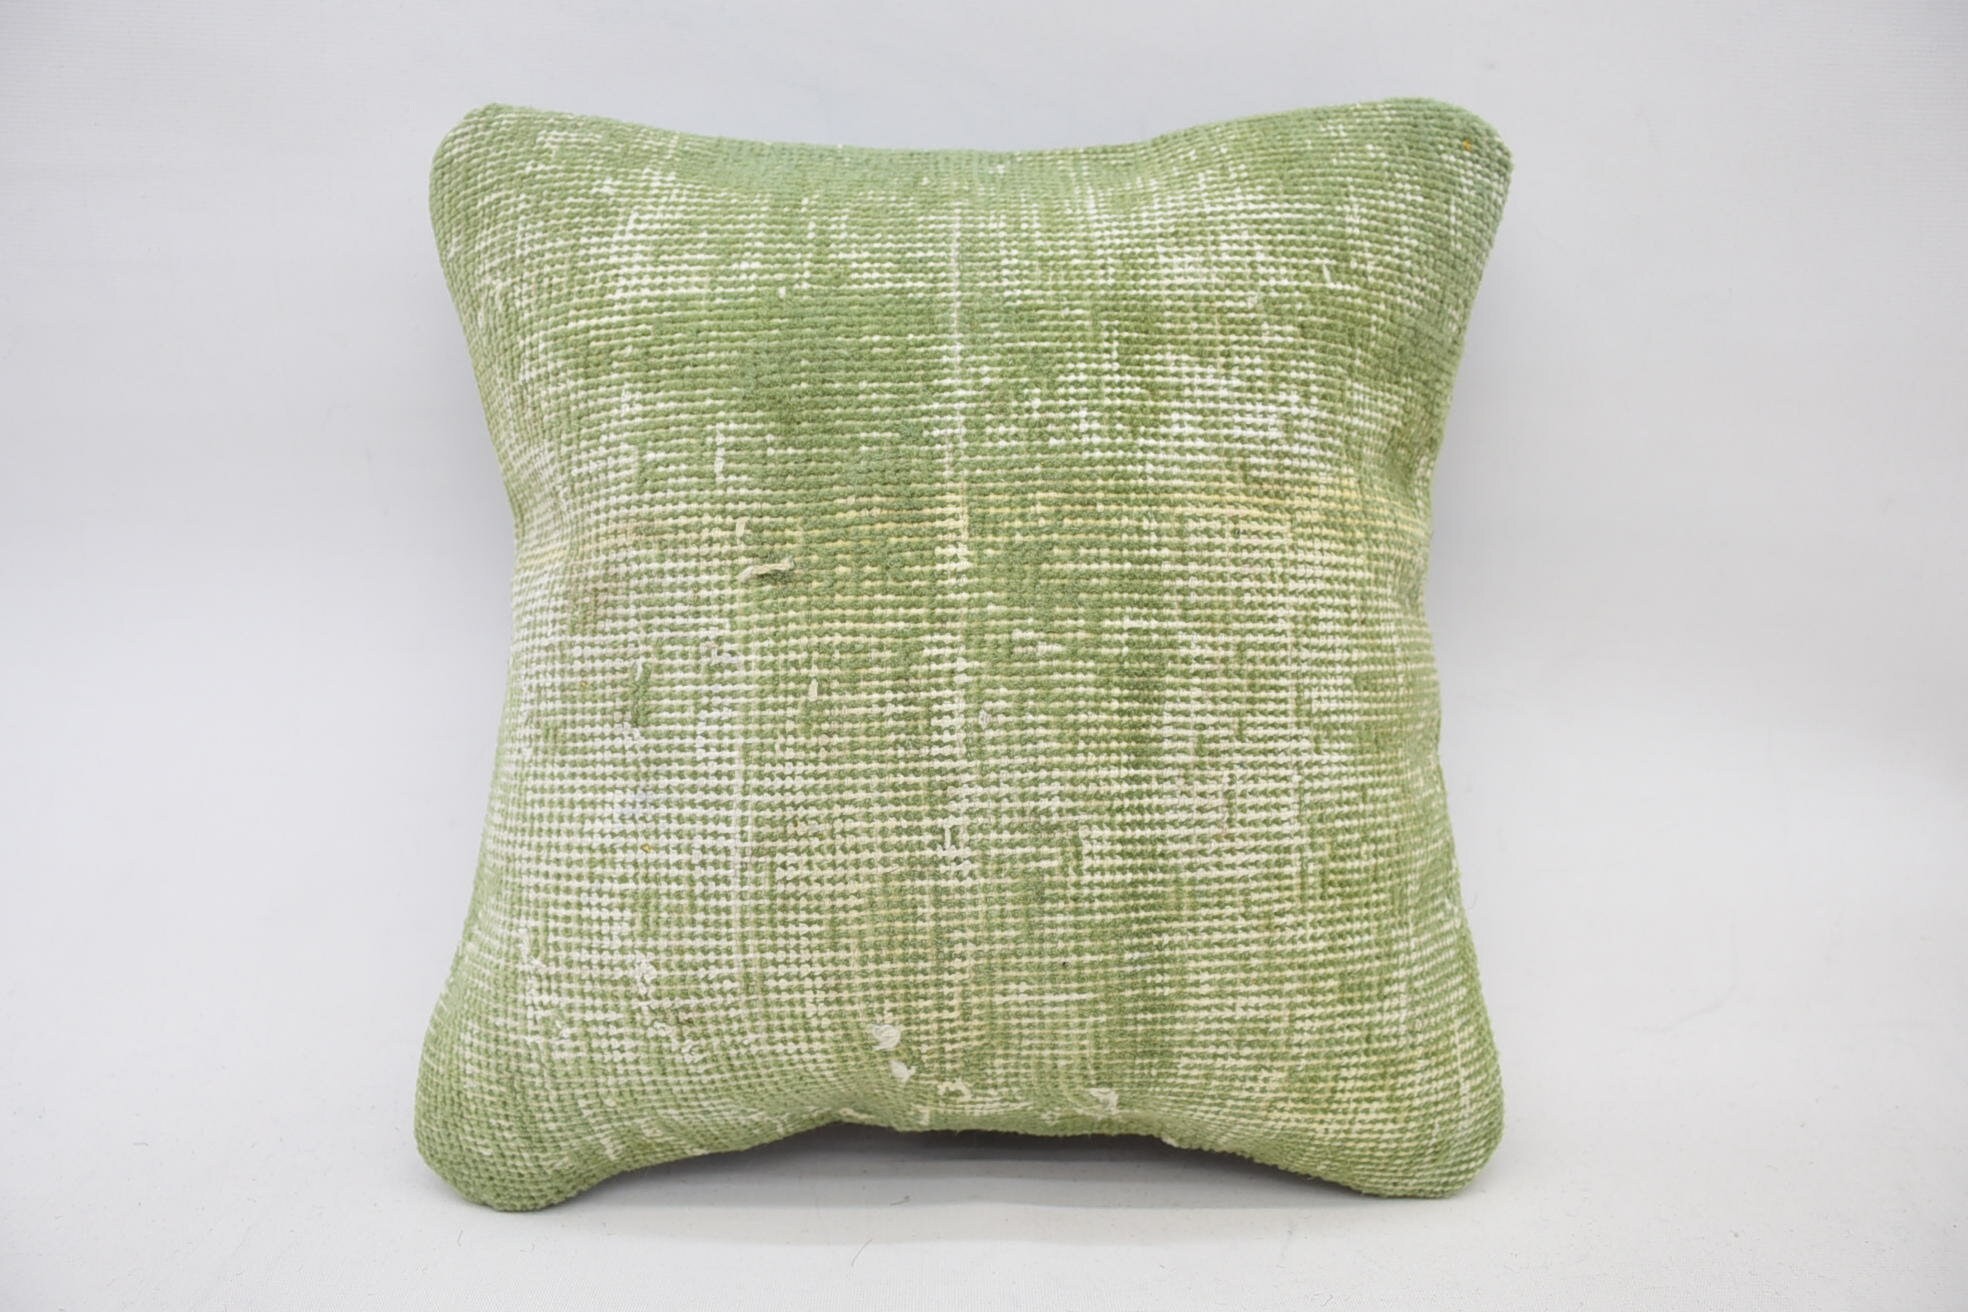 14"x14" Green Cushion, Kilim Pillow Cover, Cotton Pillow Sham, Ethnical Kilim Rug Pillow, Antique Pillows